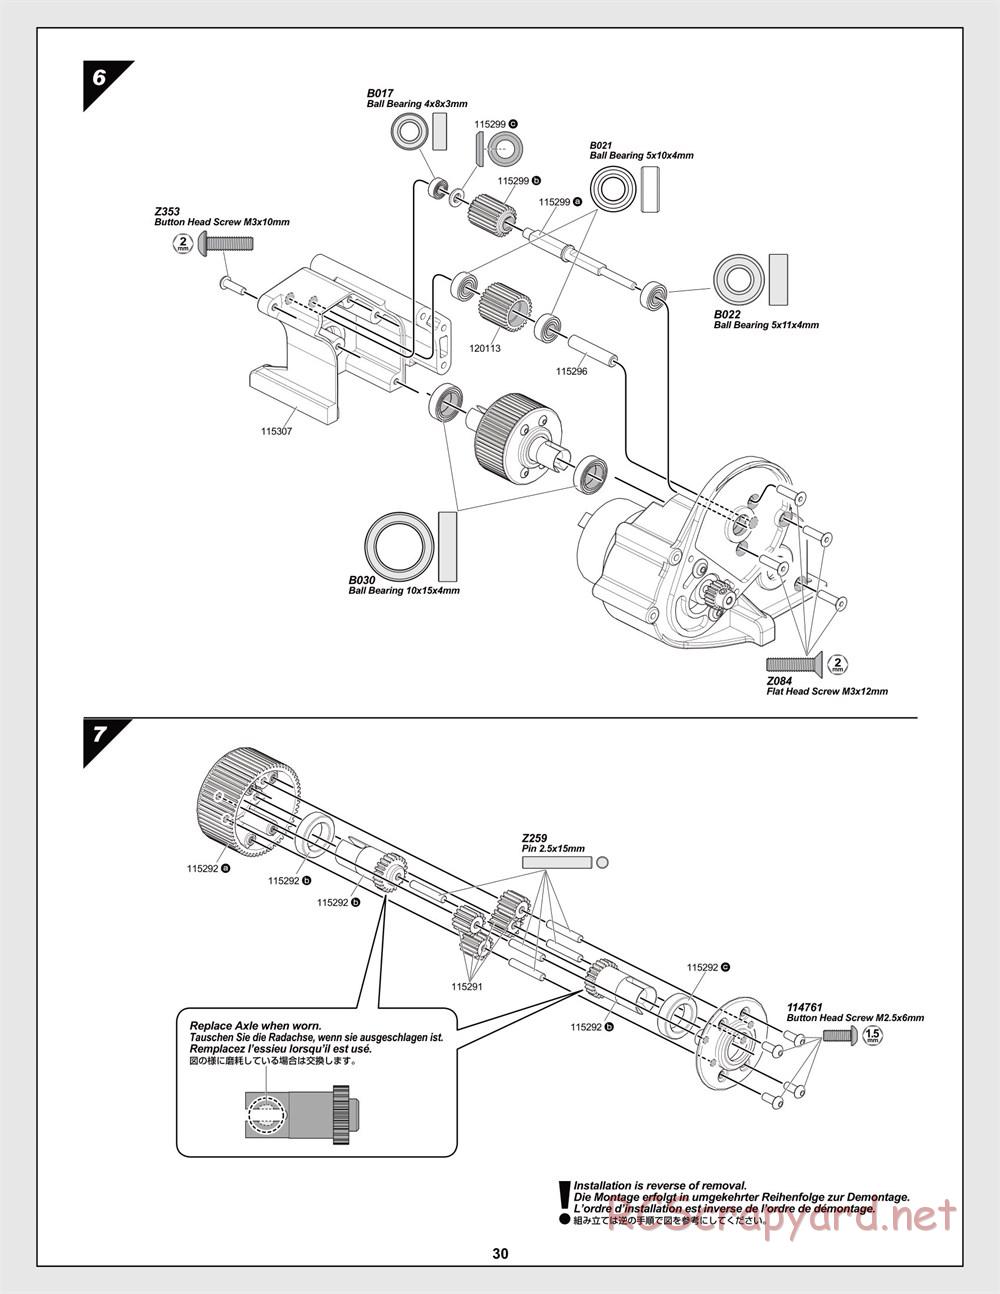 HPI - Jumpshot MT V2 - Manual - Page 30